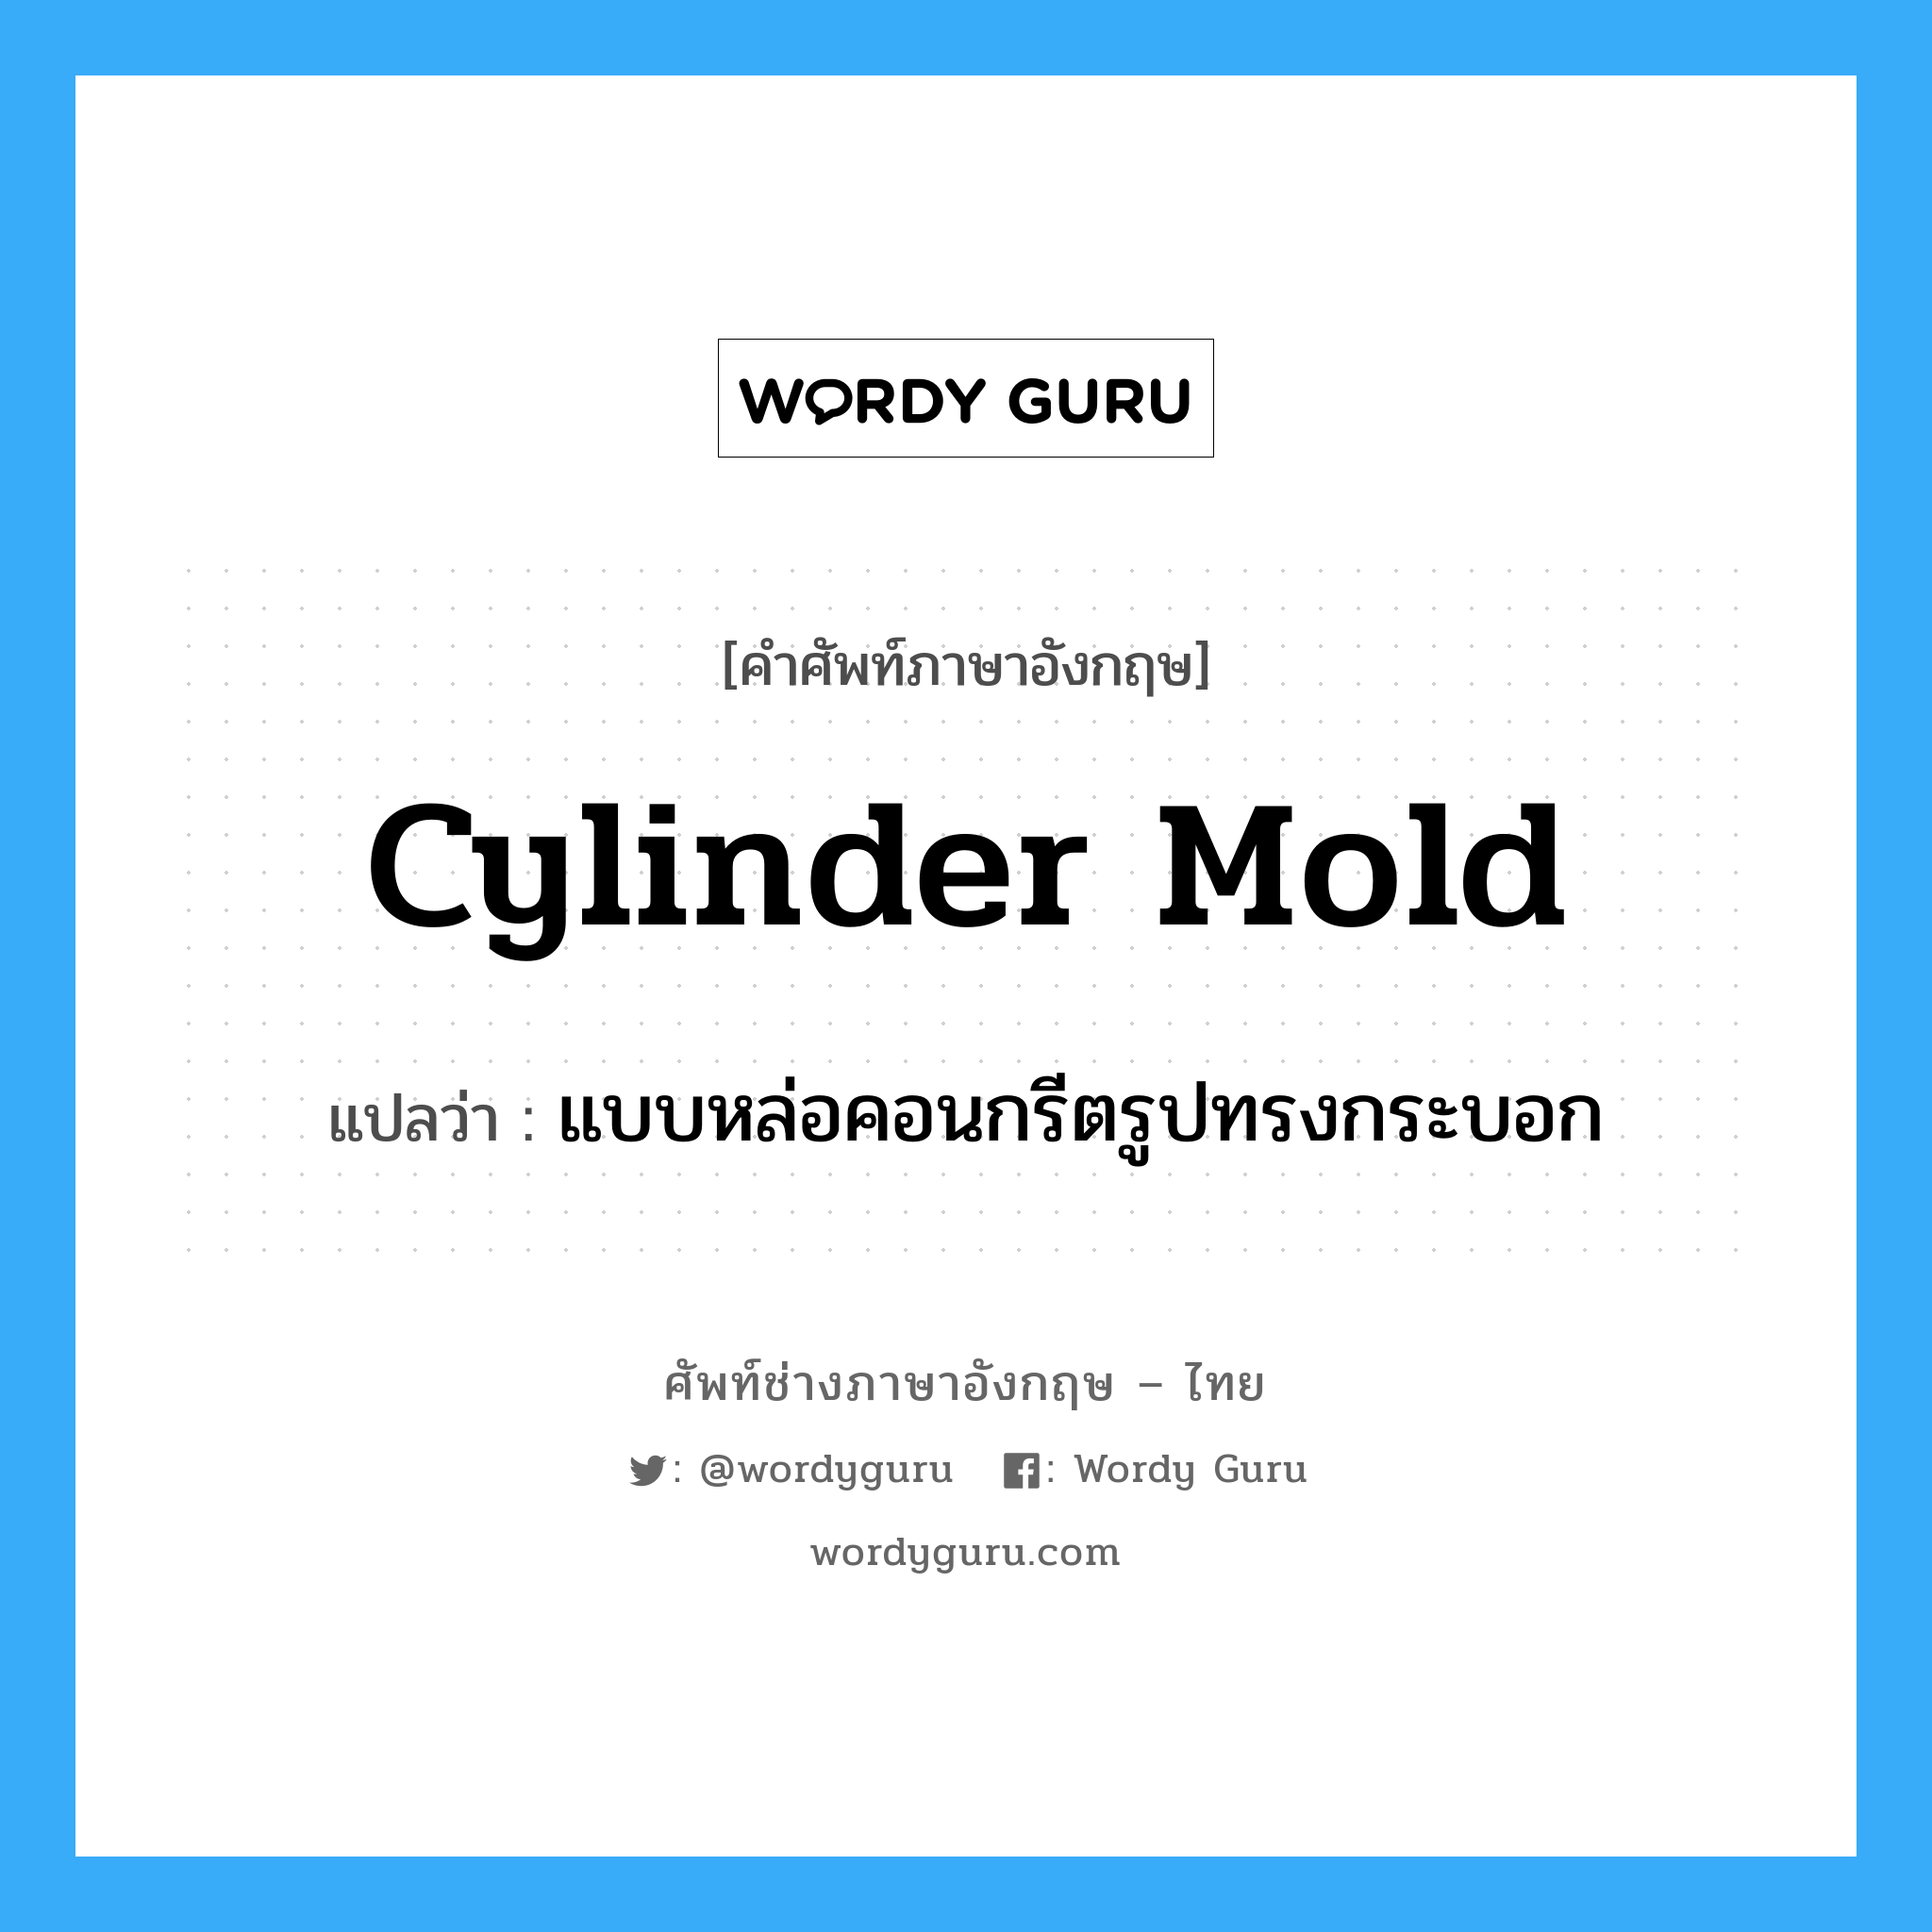 cylinder mold แปลว่า?, คำศัพท์ช่างภาษาอังกฤษ - ไทย cylinder mold คำศัพท์ภาษาอังกฤษ cylinder mold แปลว่า แบบหล่อคอนกรีตรูปทรงกระบอก